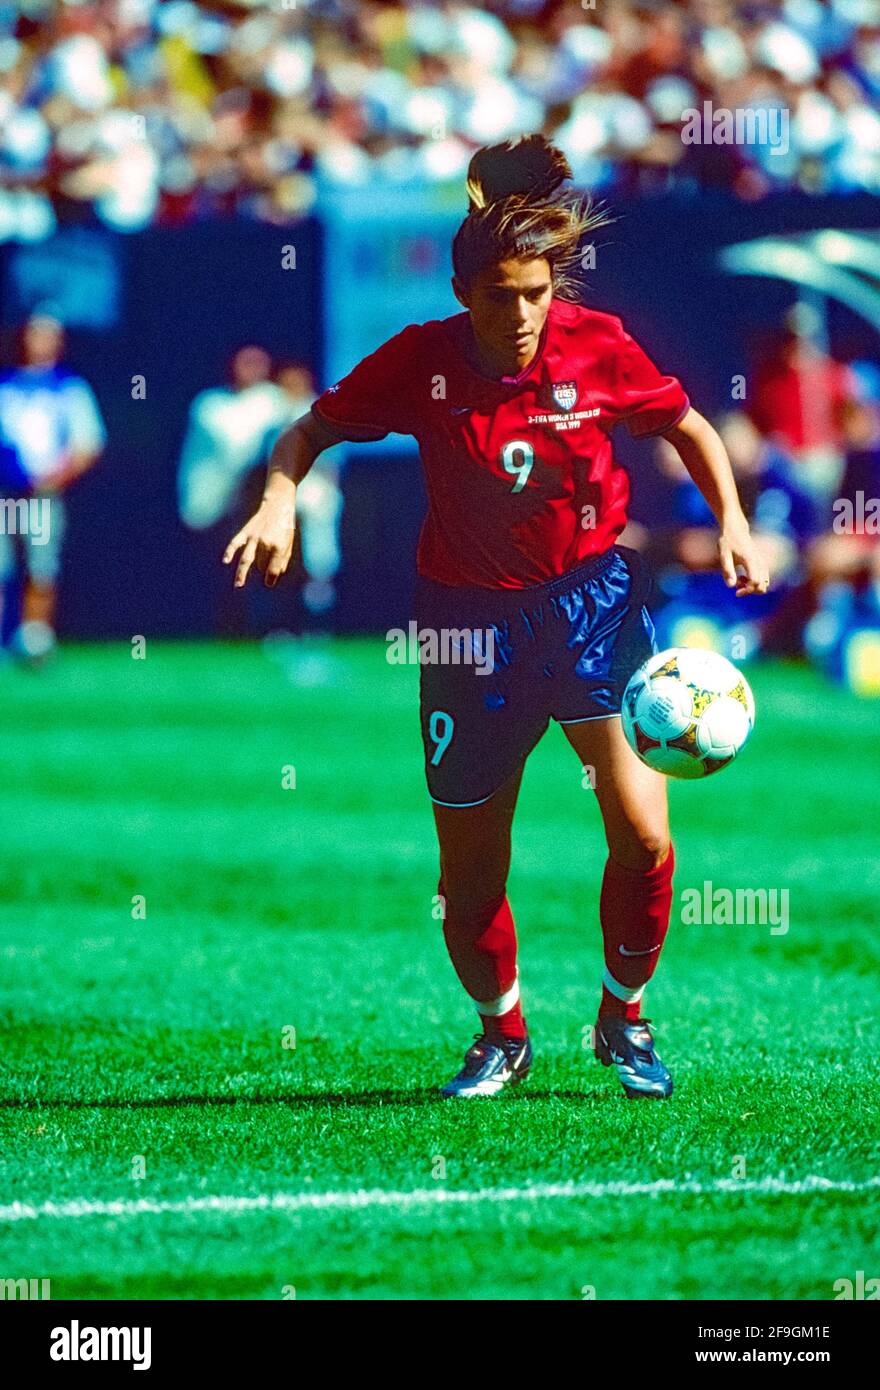 Mia Hamm, n. 9 (USA) in gara per la Coppa del mondo di calcio femminile 1999. Foto Stock